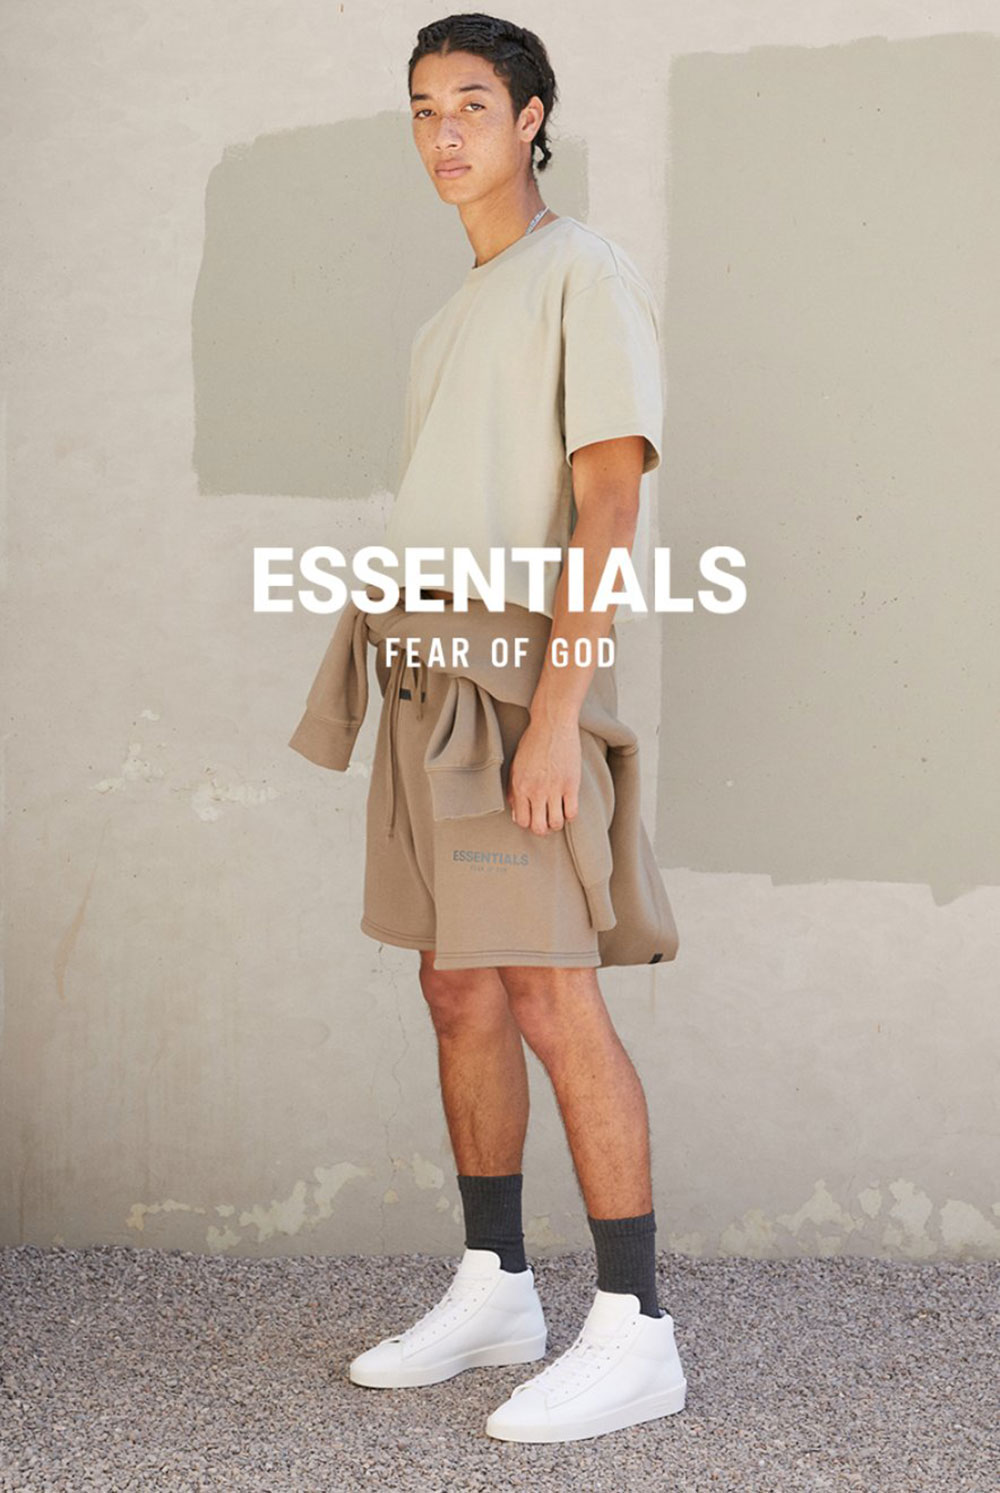 Fear of God Essentials thương hiệu đại diện phong cách essentialism thế hệ mới